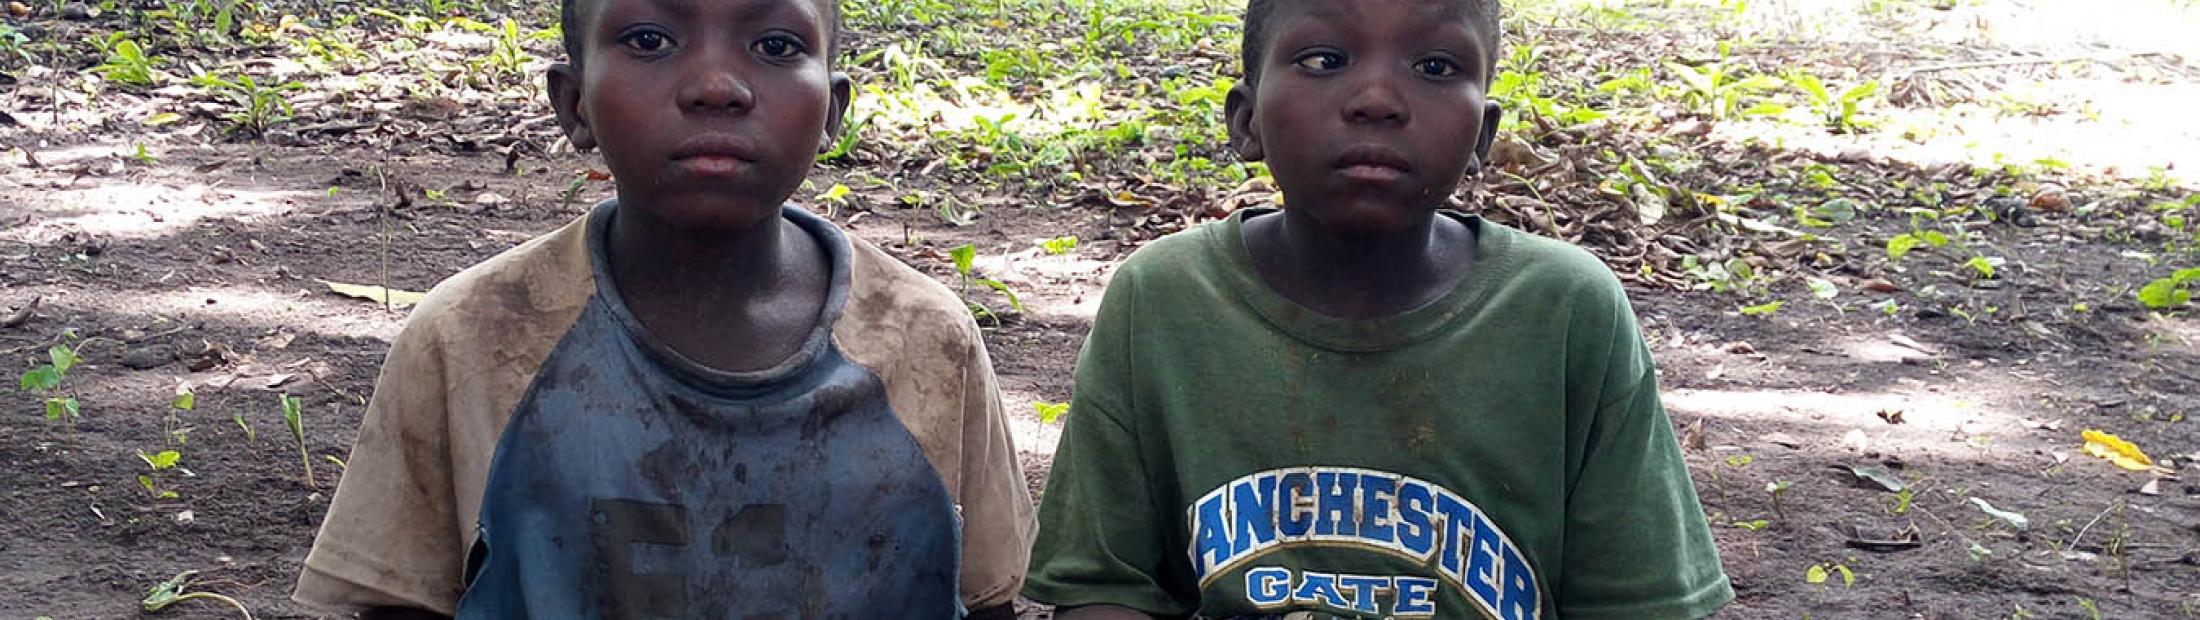 Niños huérfanos por la guerra afrontan un presente incierto en Sudán del Sur